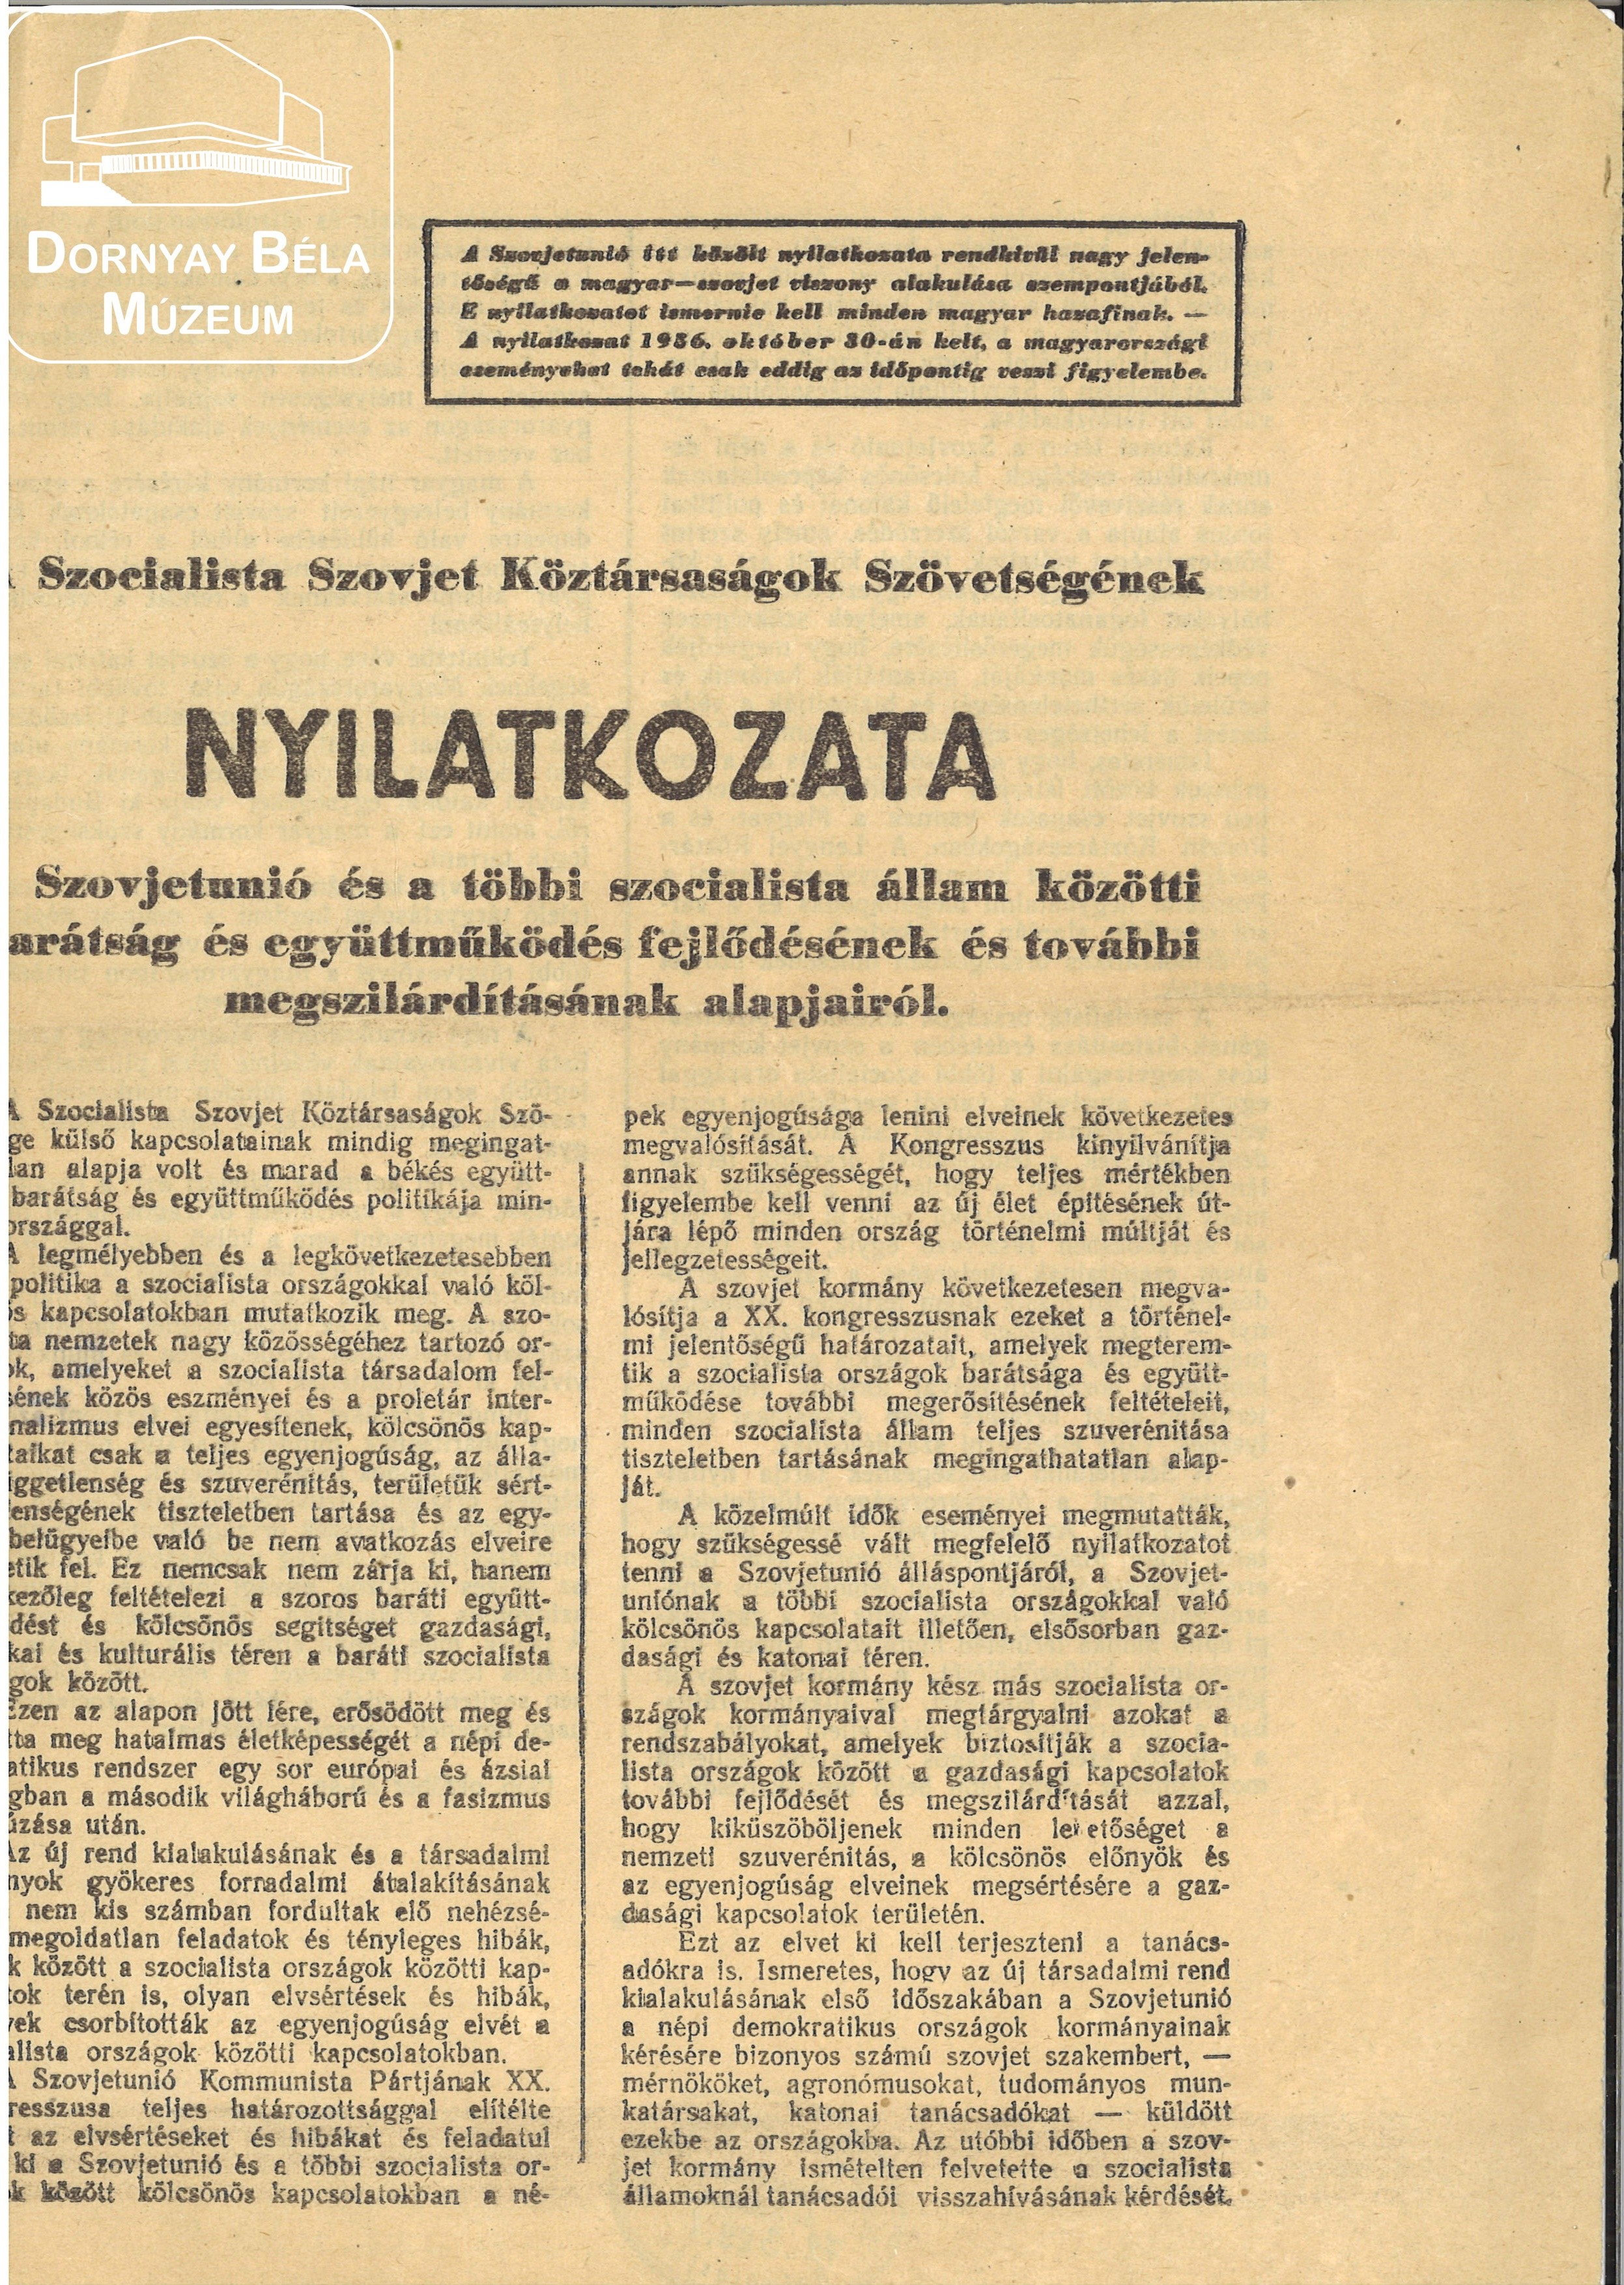 Szocialist Szovjet Köztársaságok Szövetségének nyilatkozata. (Dornyay Béla Múzeum, Salgótarján CC BY-NC-SA)